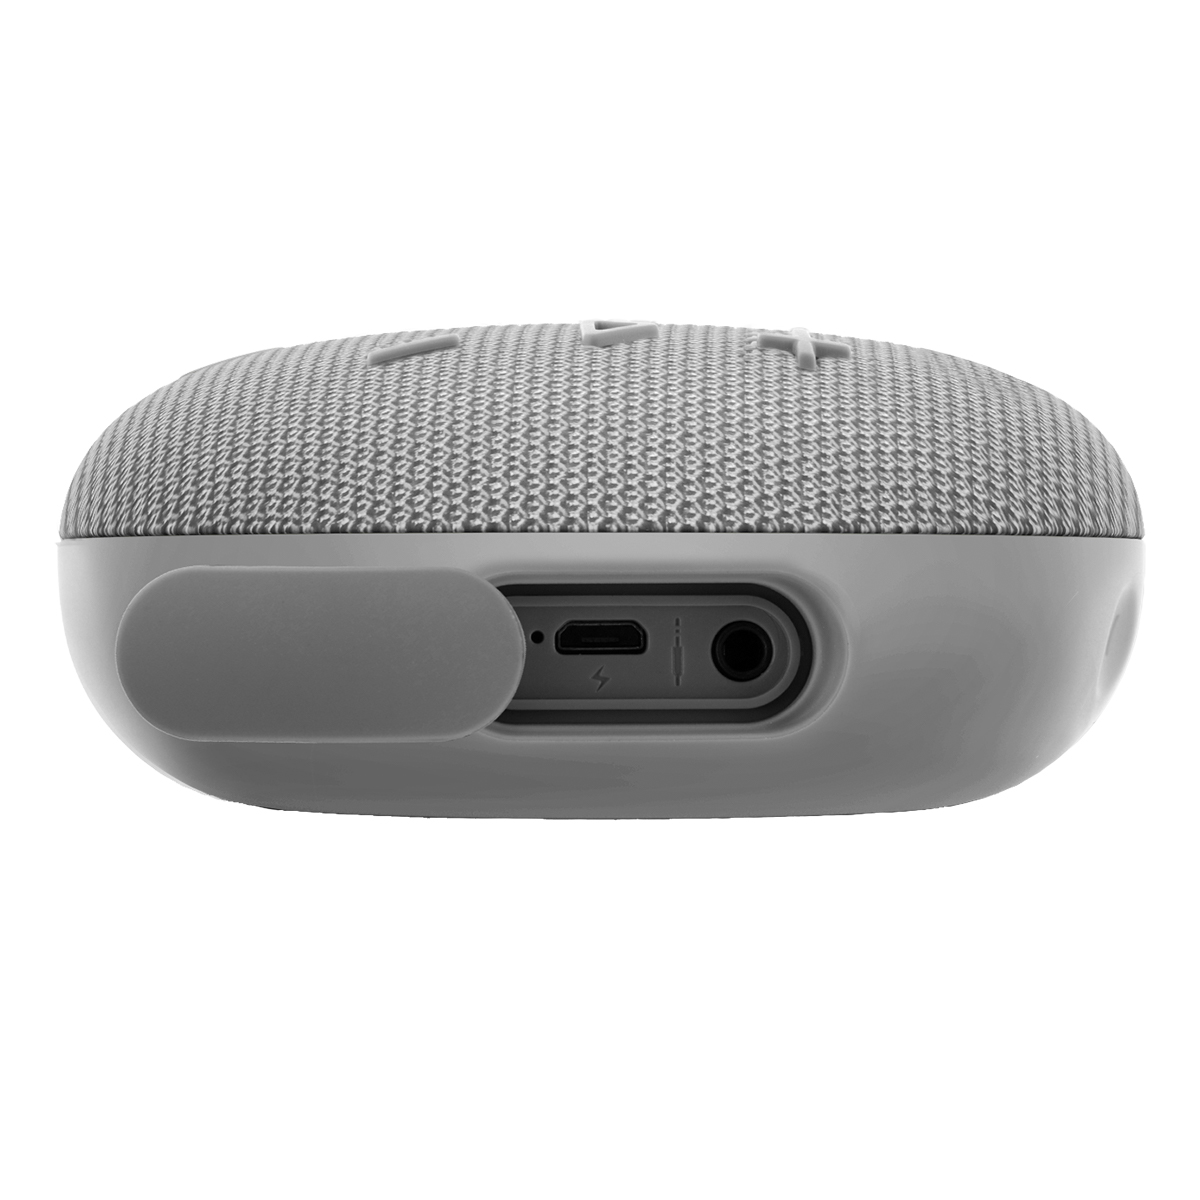 STREETZ Vattentålig Bluetooth-högtalare, TWS, 5W, IPX7, grå